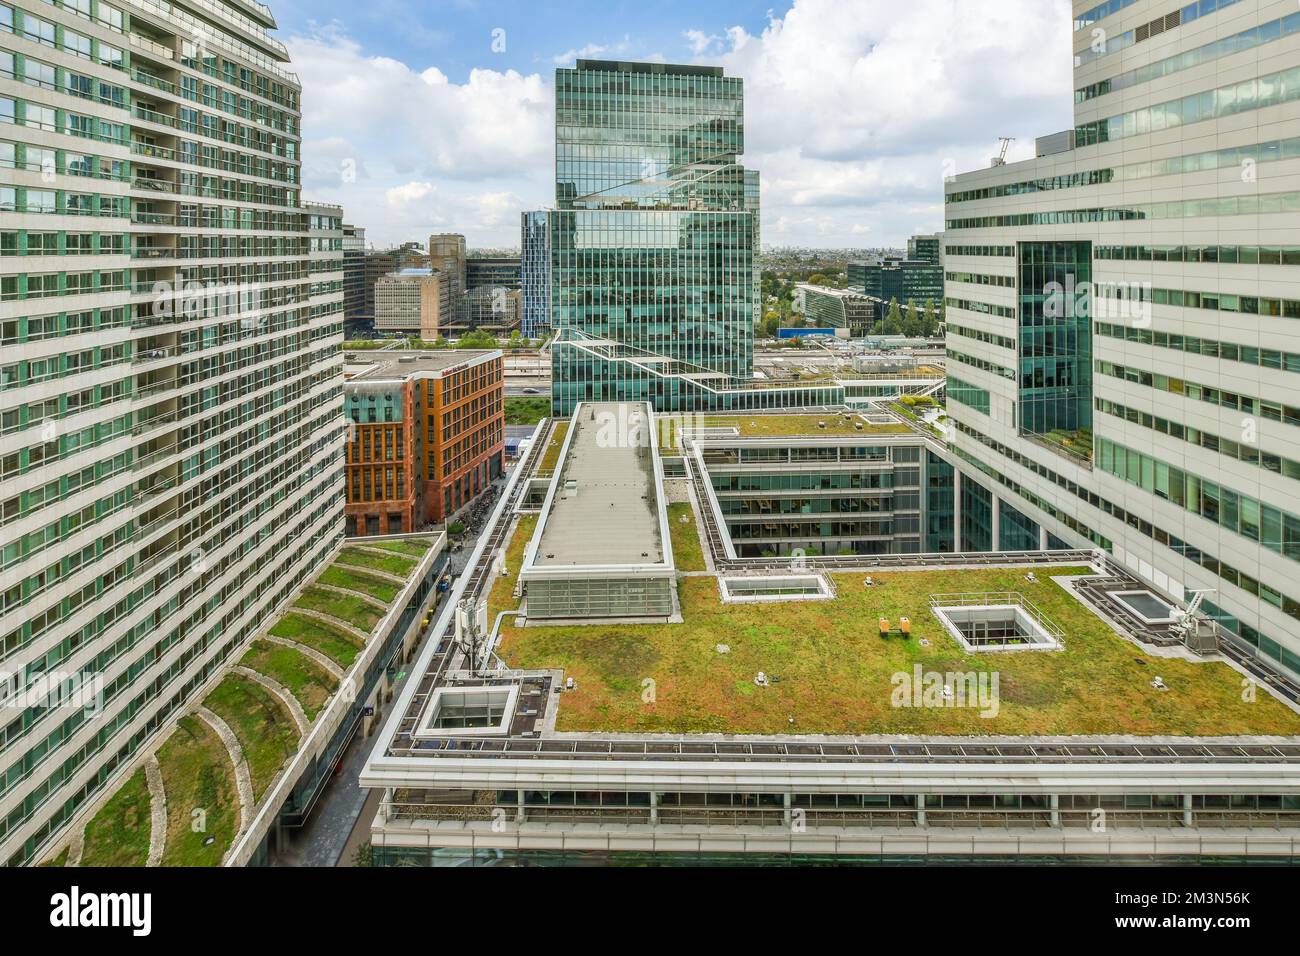 Ein grünes Dach auf einem Bürogebäude in vancouver, kanada, dies ist eines meiner Lieblingsbeschäftigungen Stockfoto